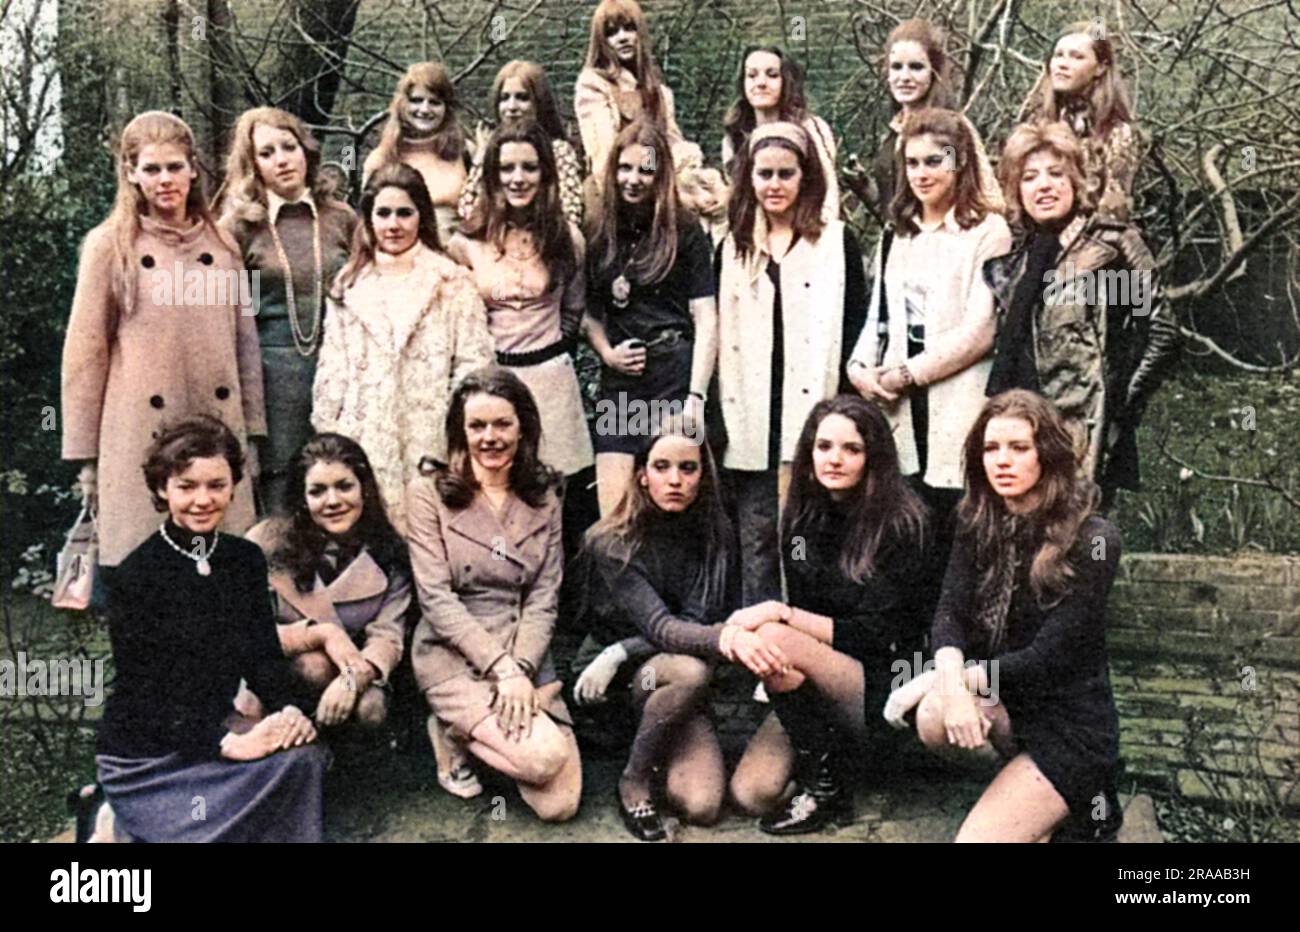 Un groupe de vingt filles choisies parmi 200 espoirs pour participer à l'événement d'ouverture de la saison de Londres, le Berkeley Dress Show (anciennement le Berkeley Debutante Dress Show) qui aura lieu en avril 1970. Date: 1970 Banque D'Images